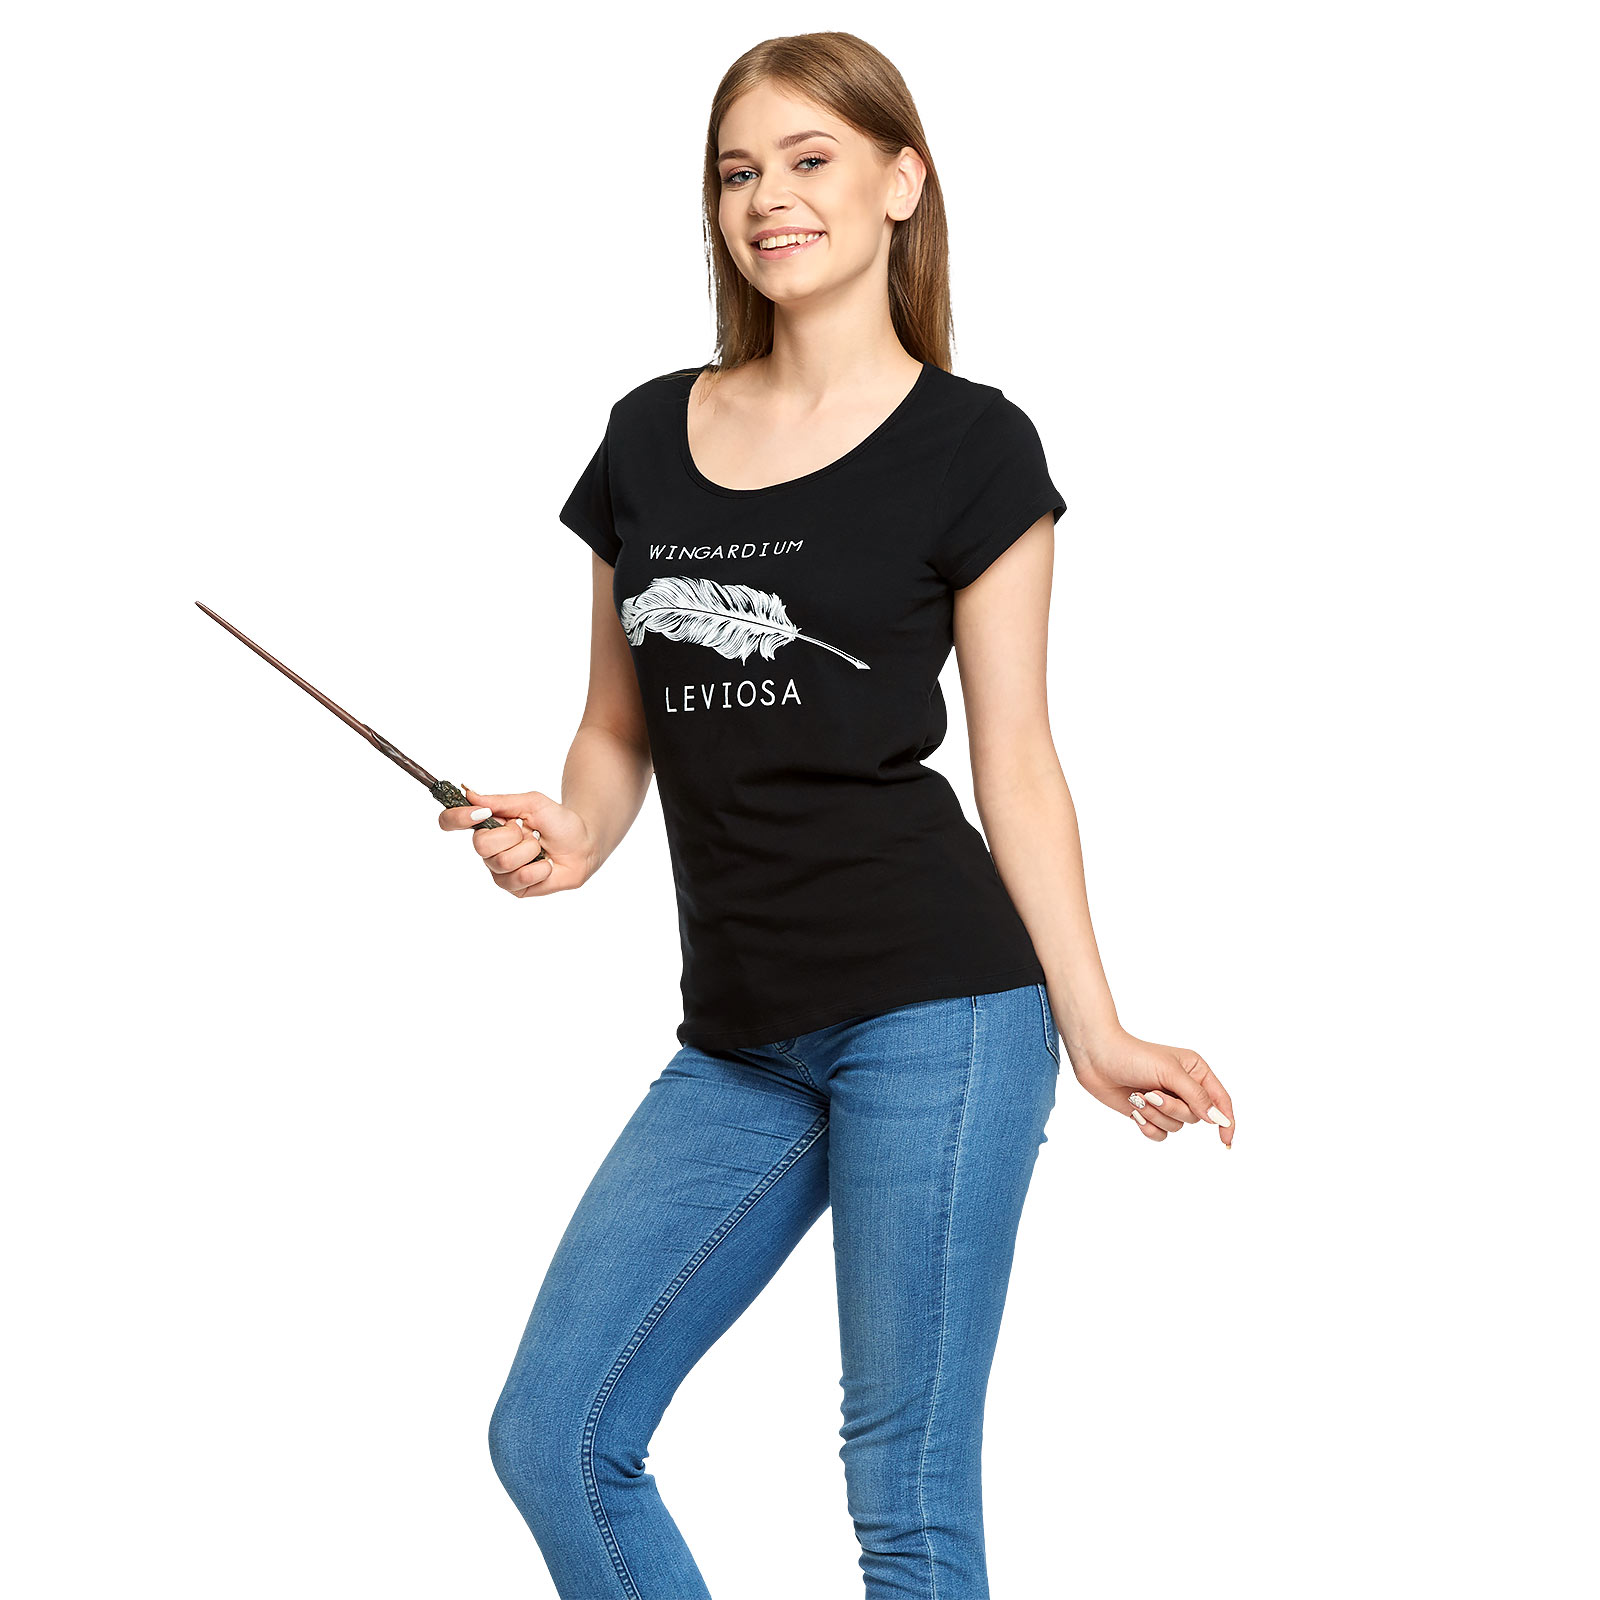 Harry Potter - T-shirt Wingardium Leviosa pour femmes noir